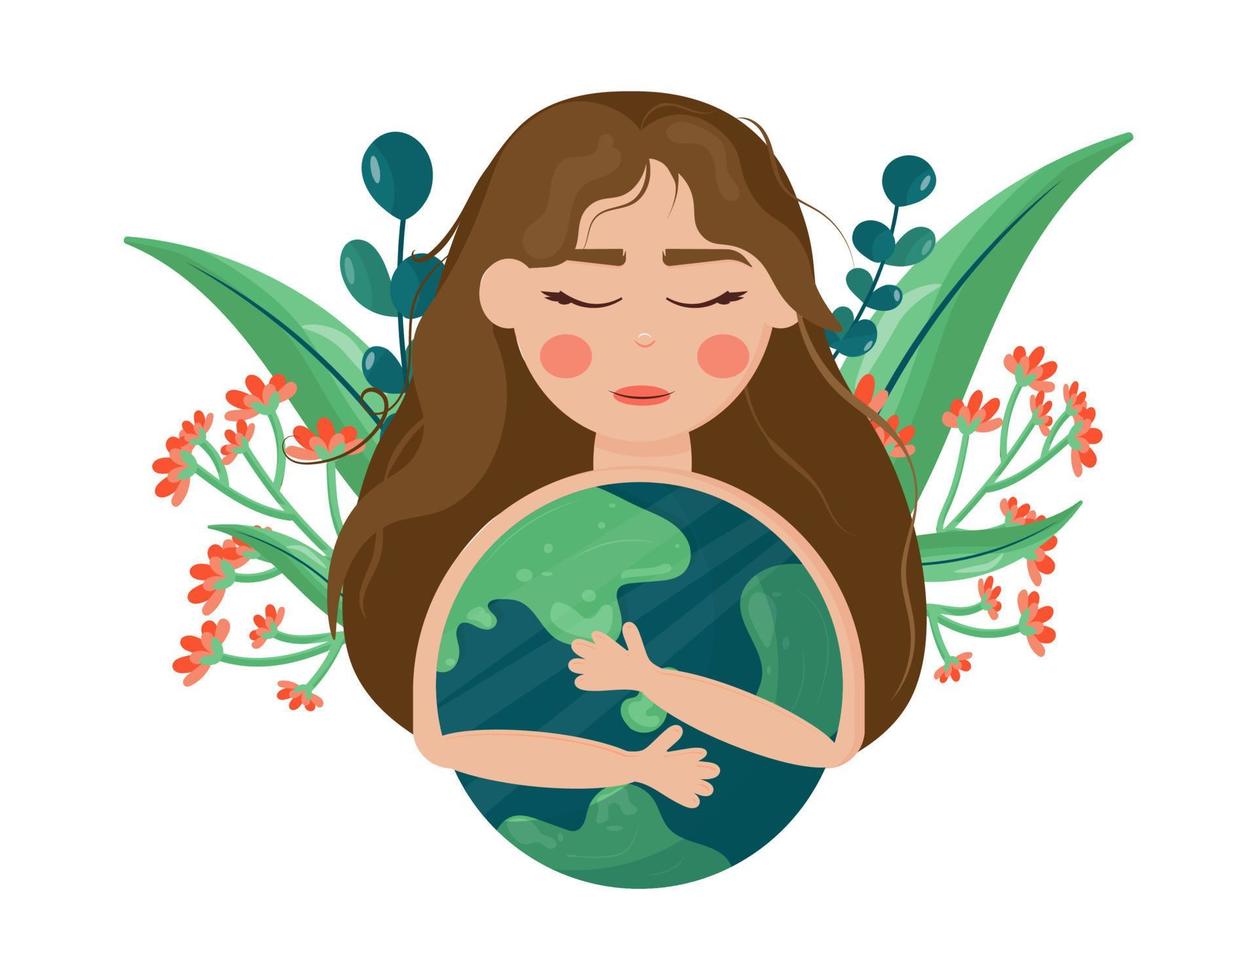 jordens dag är den 22 april. bannerflicka omfamnar världen. internationella Mother Earth Day. miljöskydd. vektor illustration i tecknad stil. för utskrift av klistermärken, affischer, vykort.